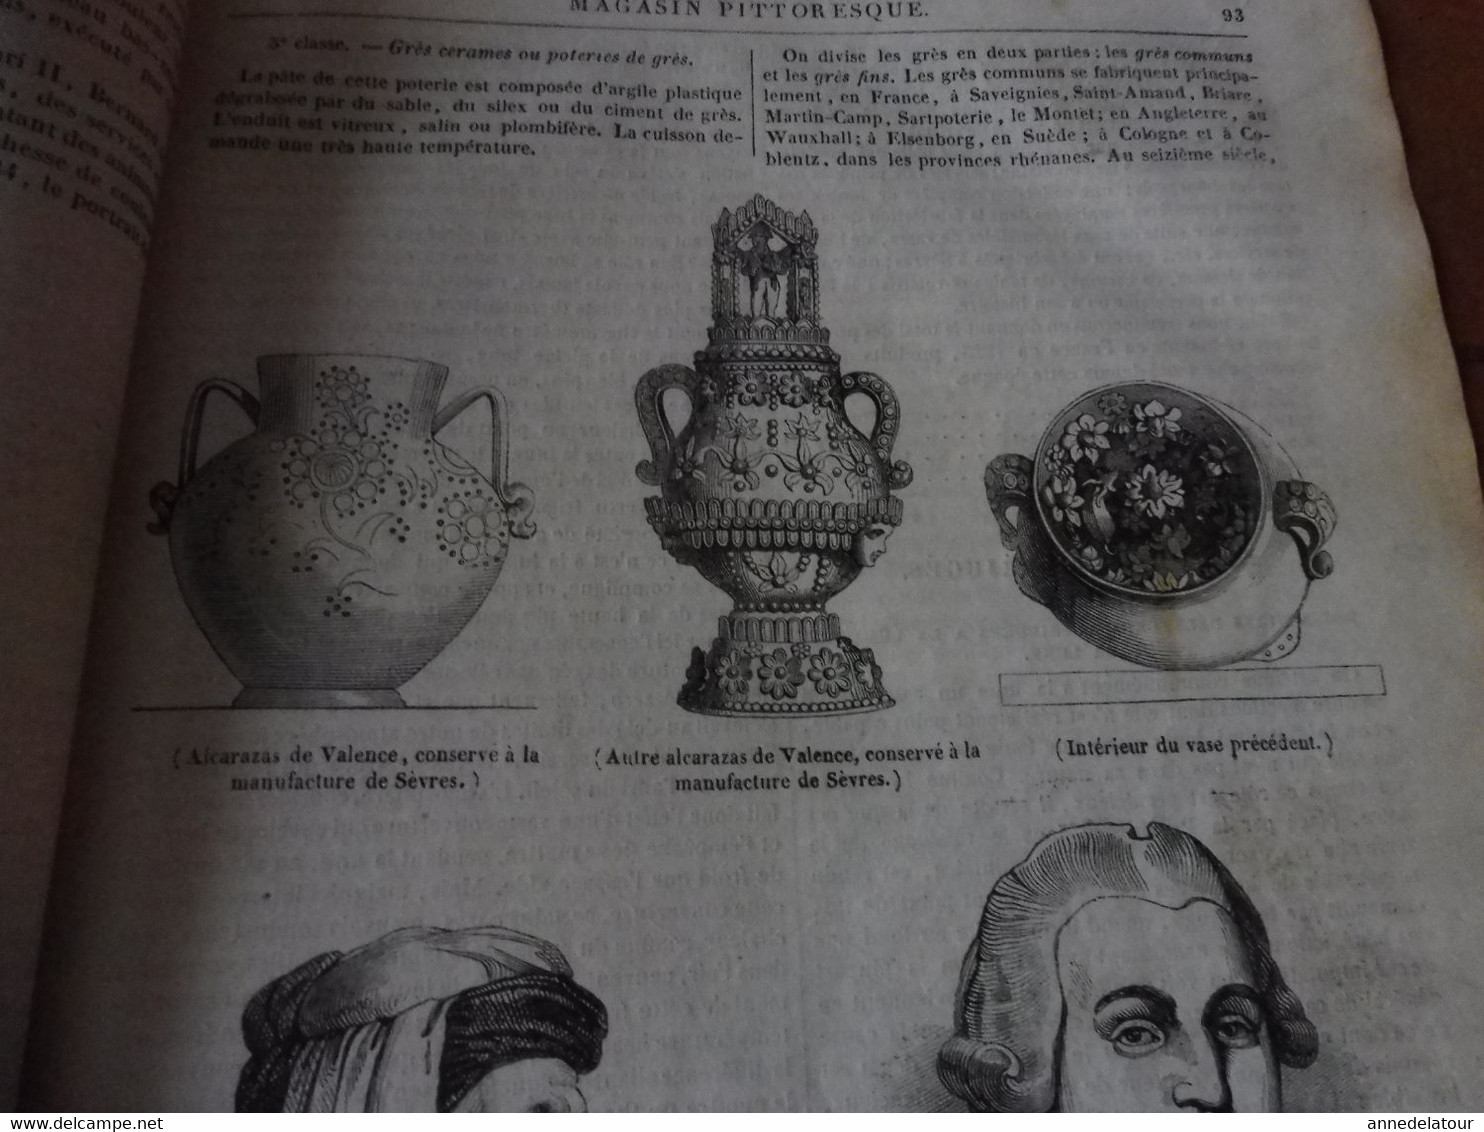 Année 1839: Manufacture de Sèvres et descriptions des poteries; Recette infaillible contre l'irrésolution ; Etc